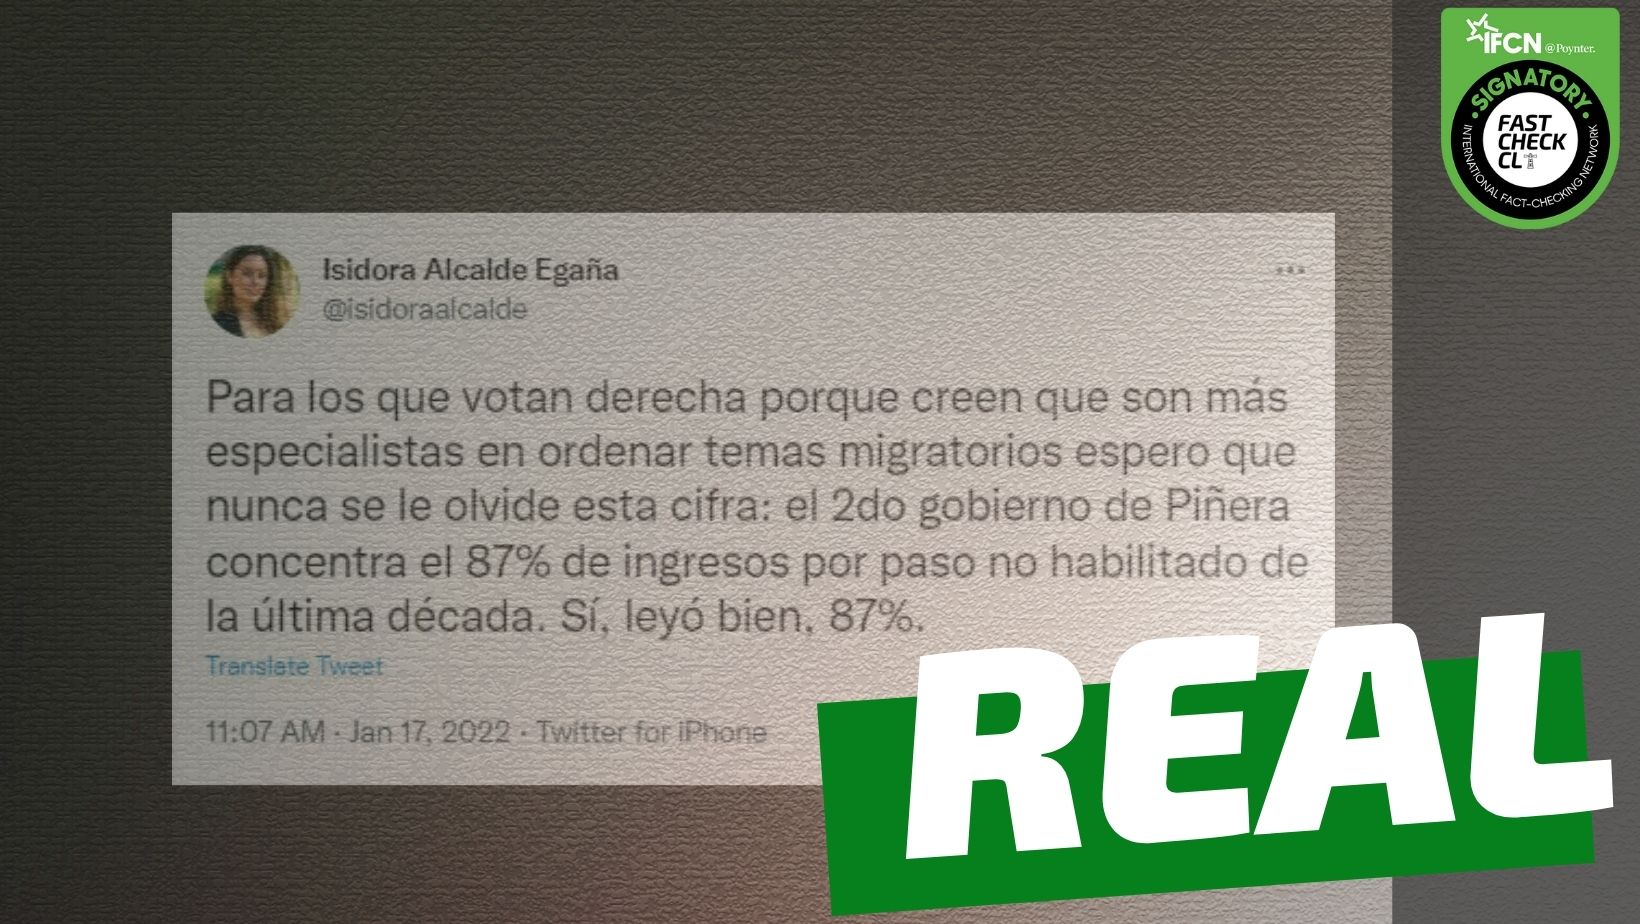 You are currently viewing “El segundo gobierno de Piñera concentra el 87% de ingresos por paso no habilitado de la última década”: #Real